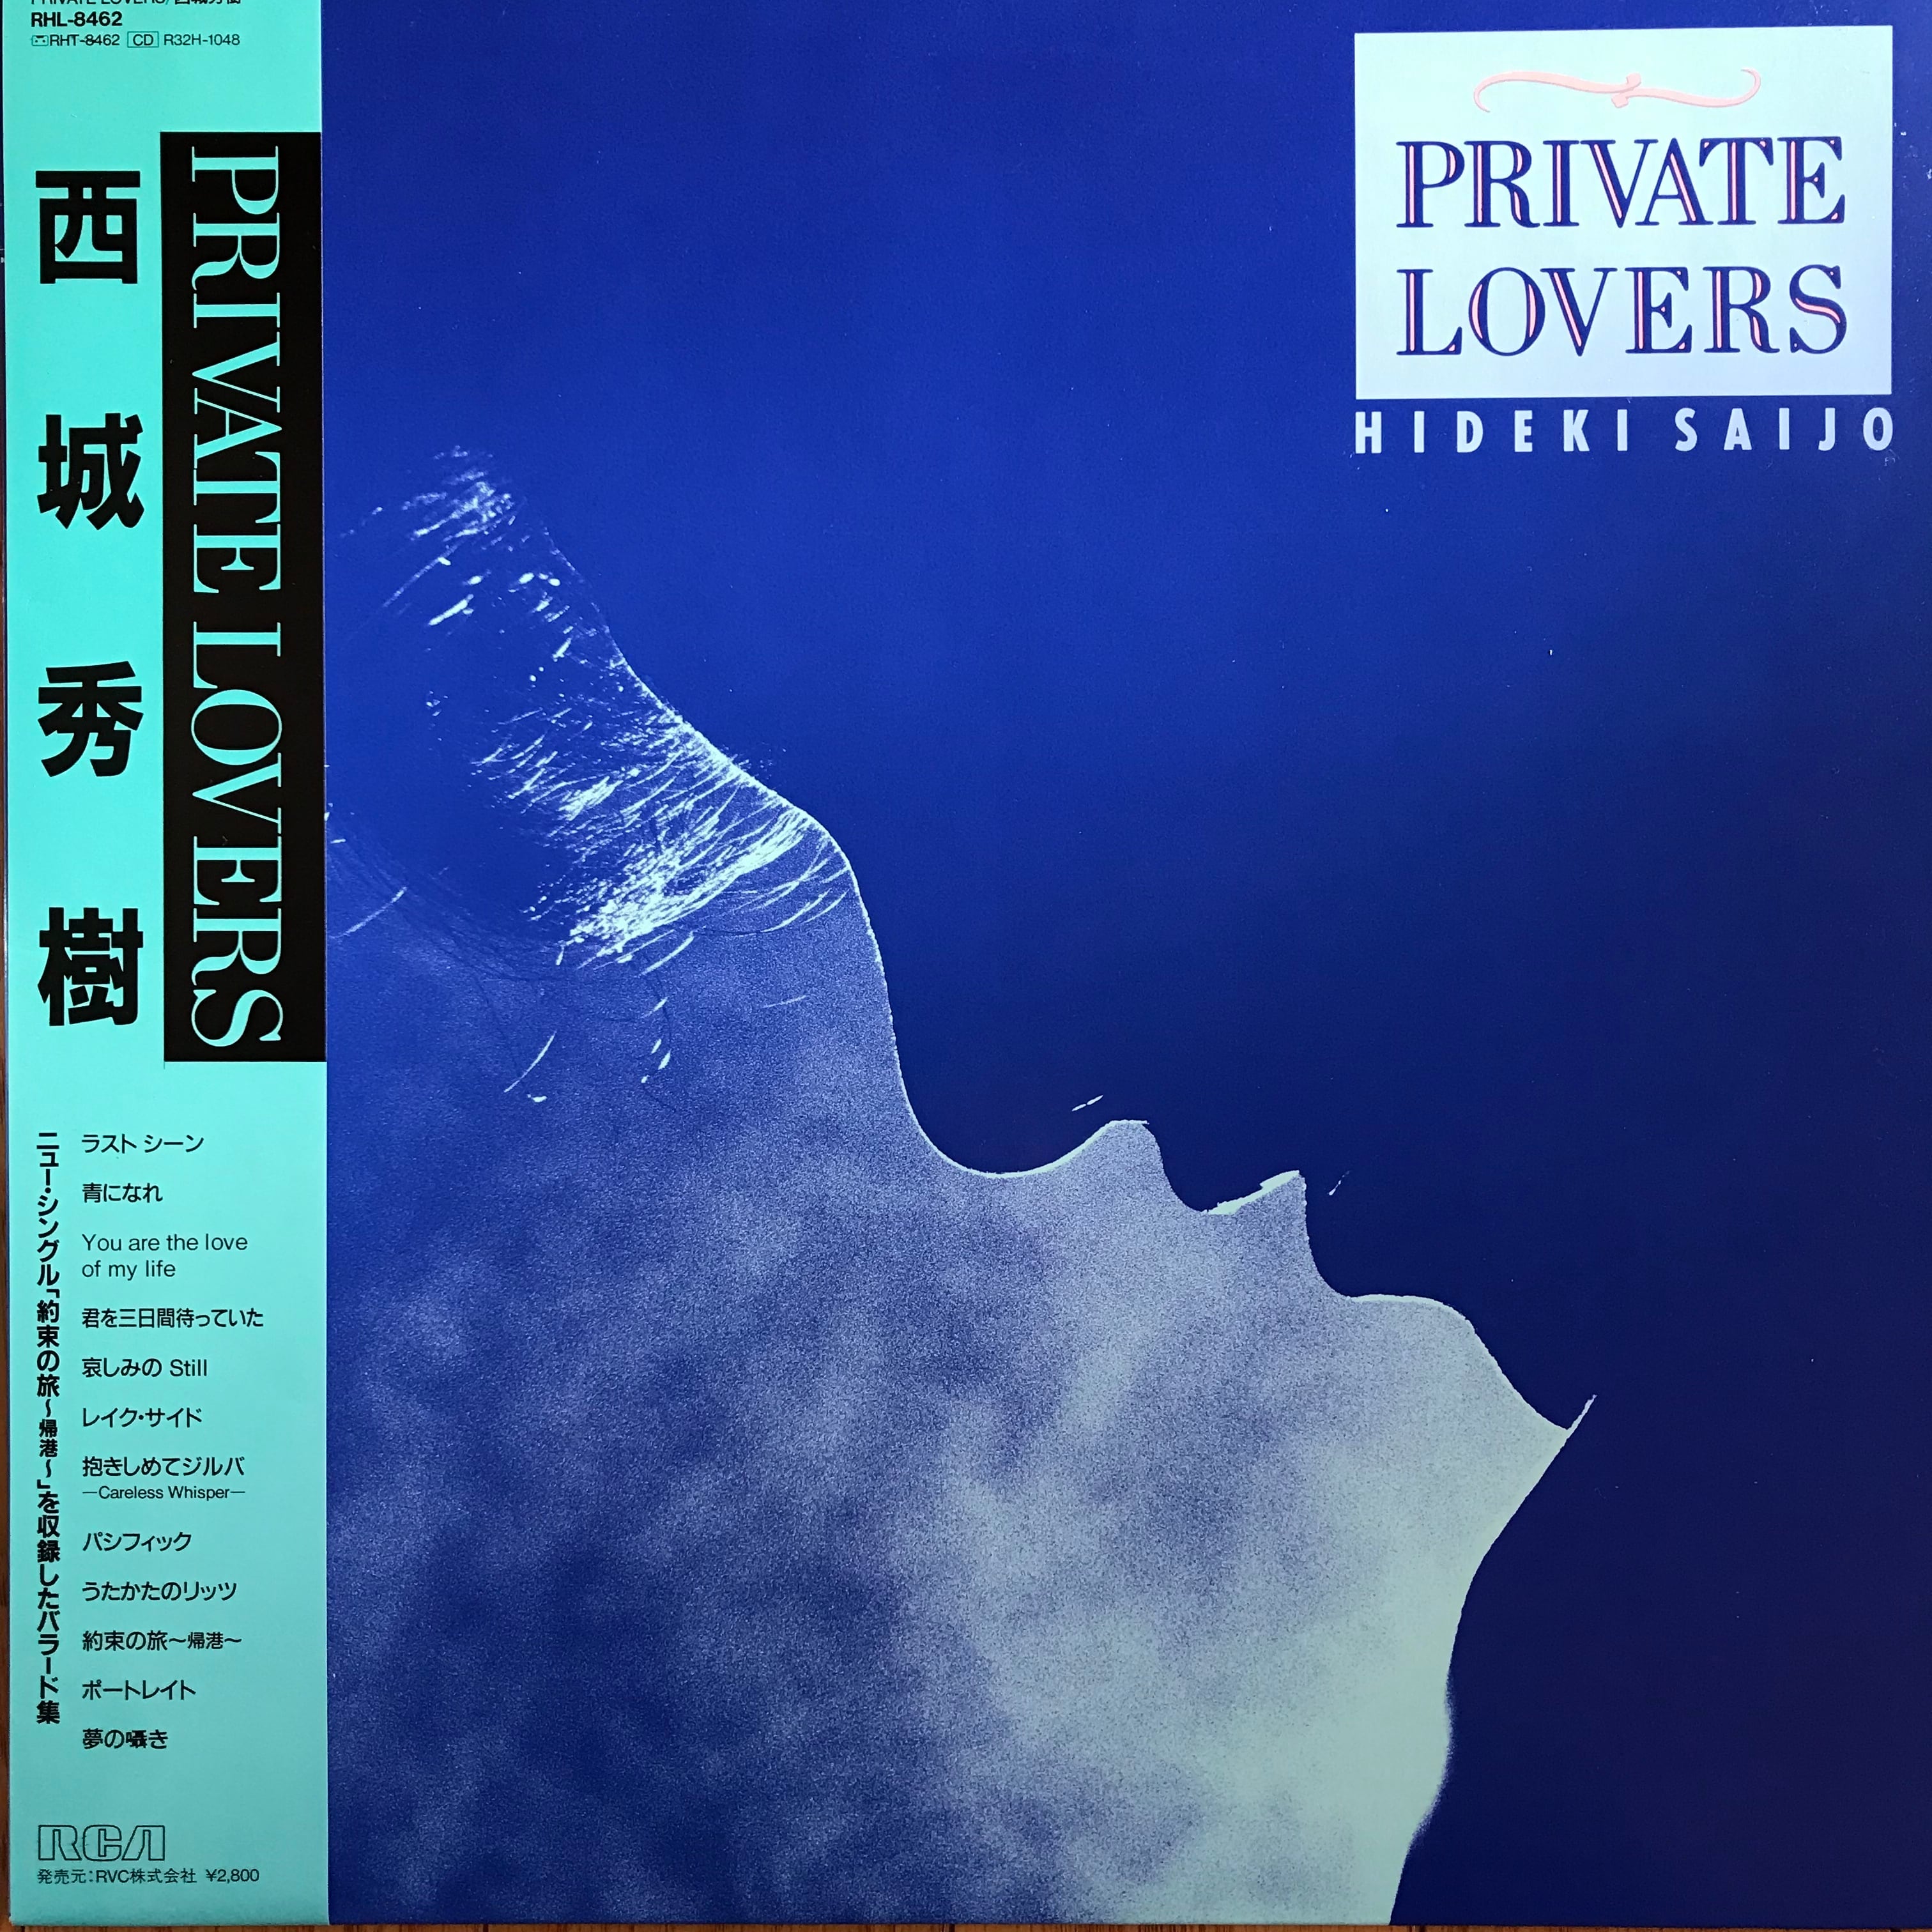 西城秀樹 PRIVATE LOVERS PASSTIME RECORDS パスタイム レコード